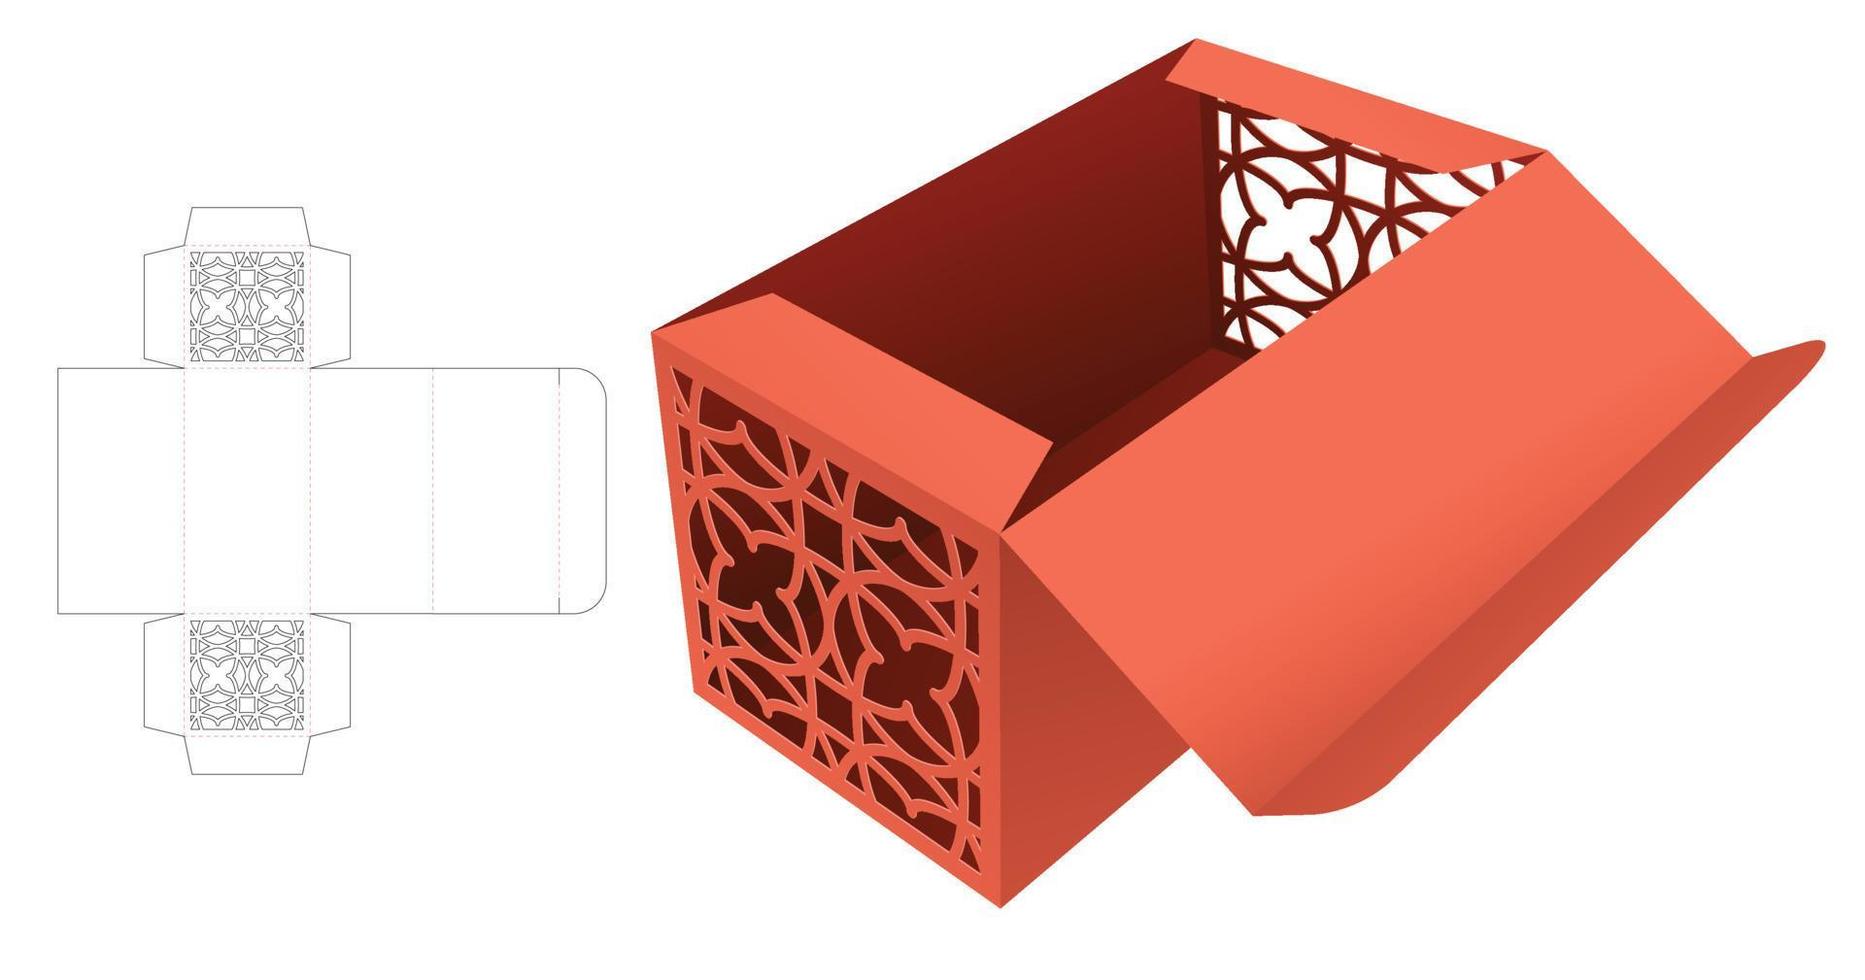 caixa com padrão estampado nas paredes laterais modelo de corte e maquete 3d vetor